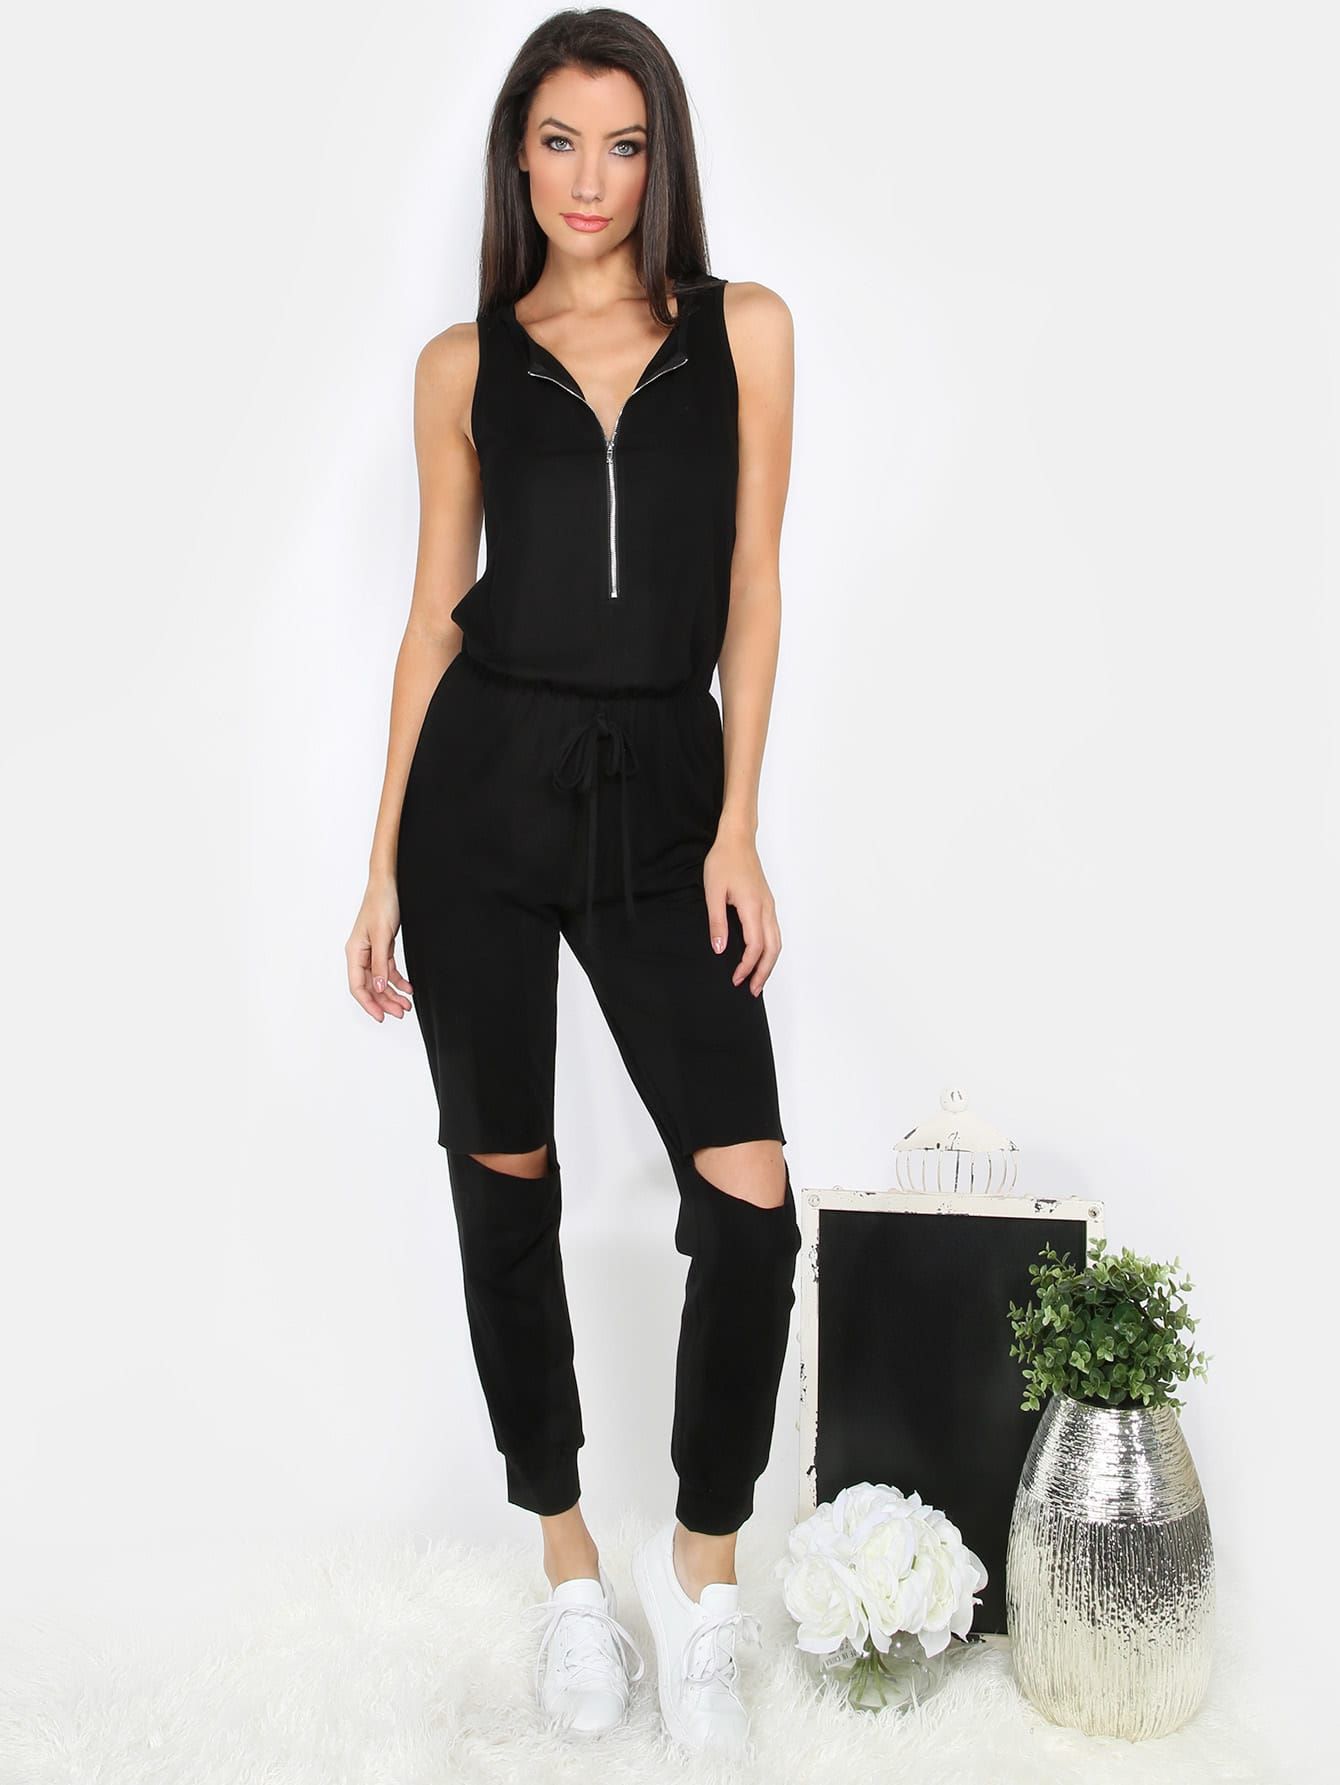 Black Sleeveless Zipper Cutout Jumpsuit | Romwe